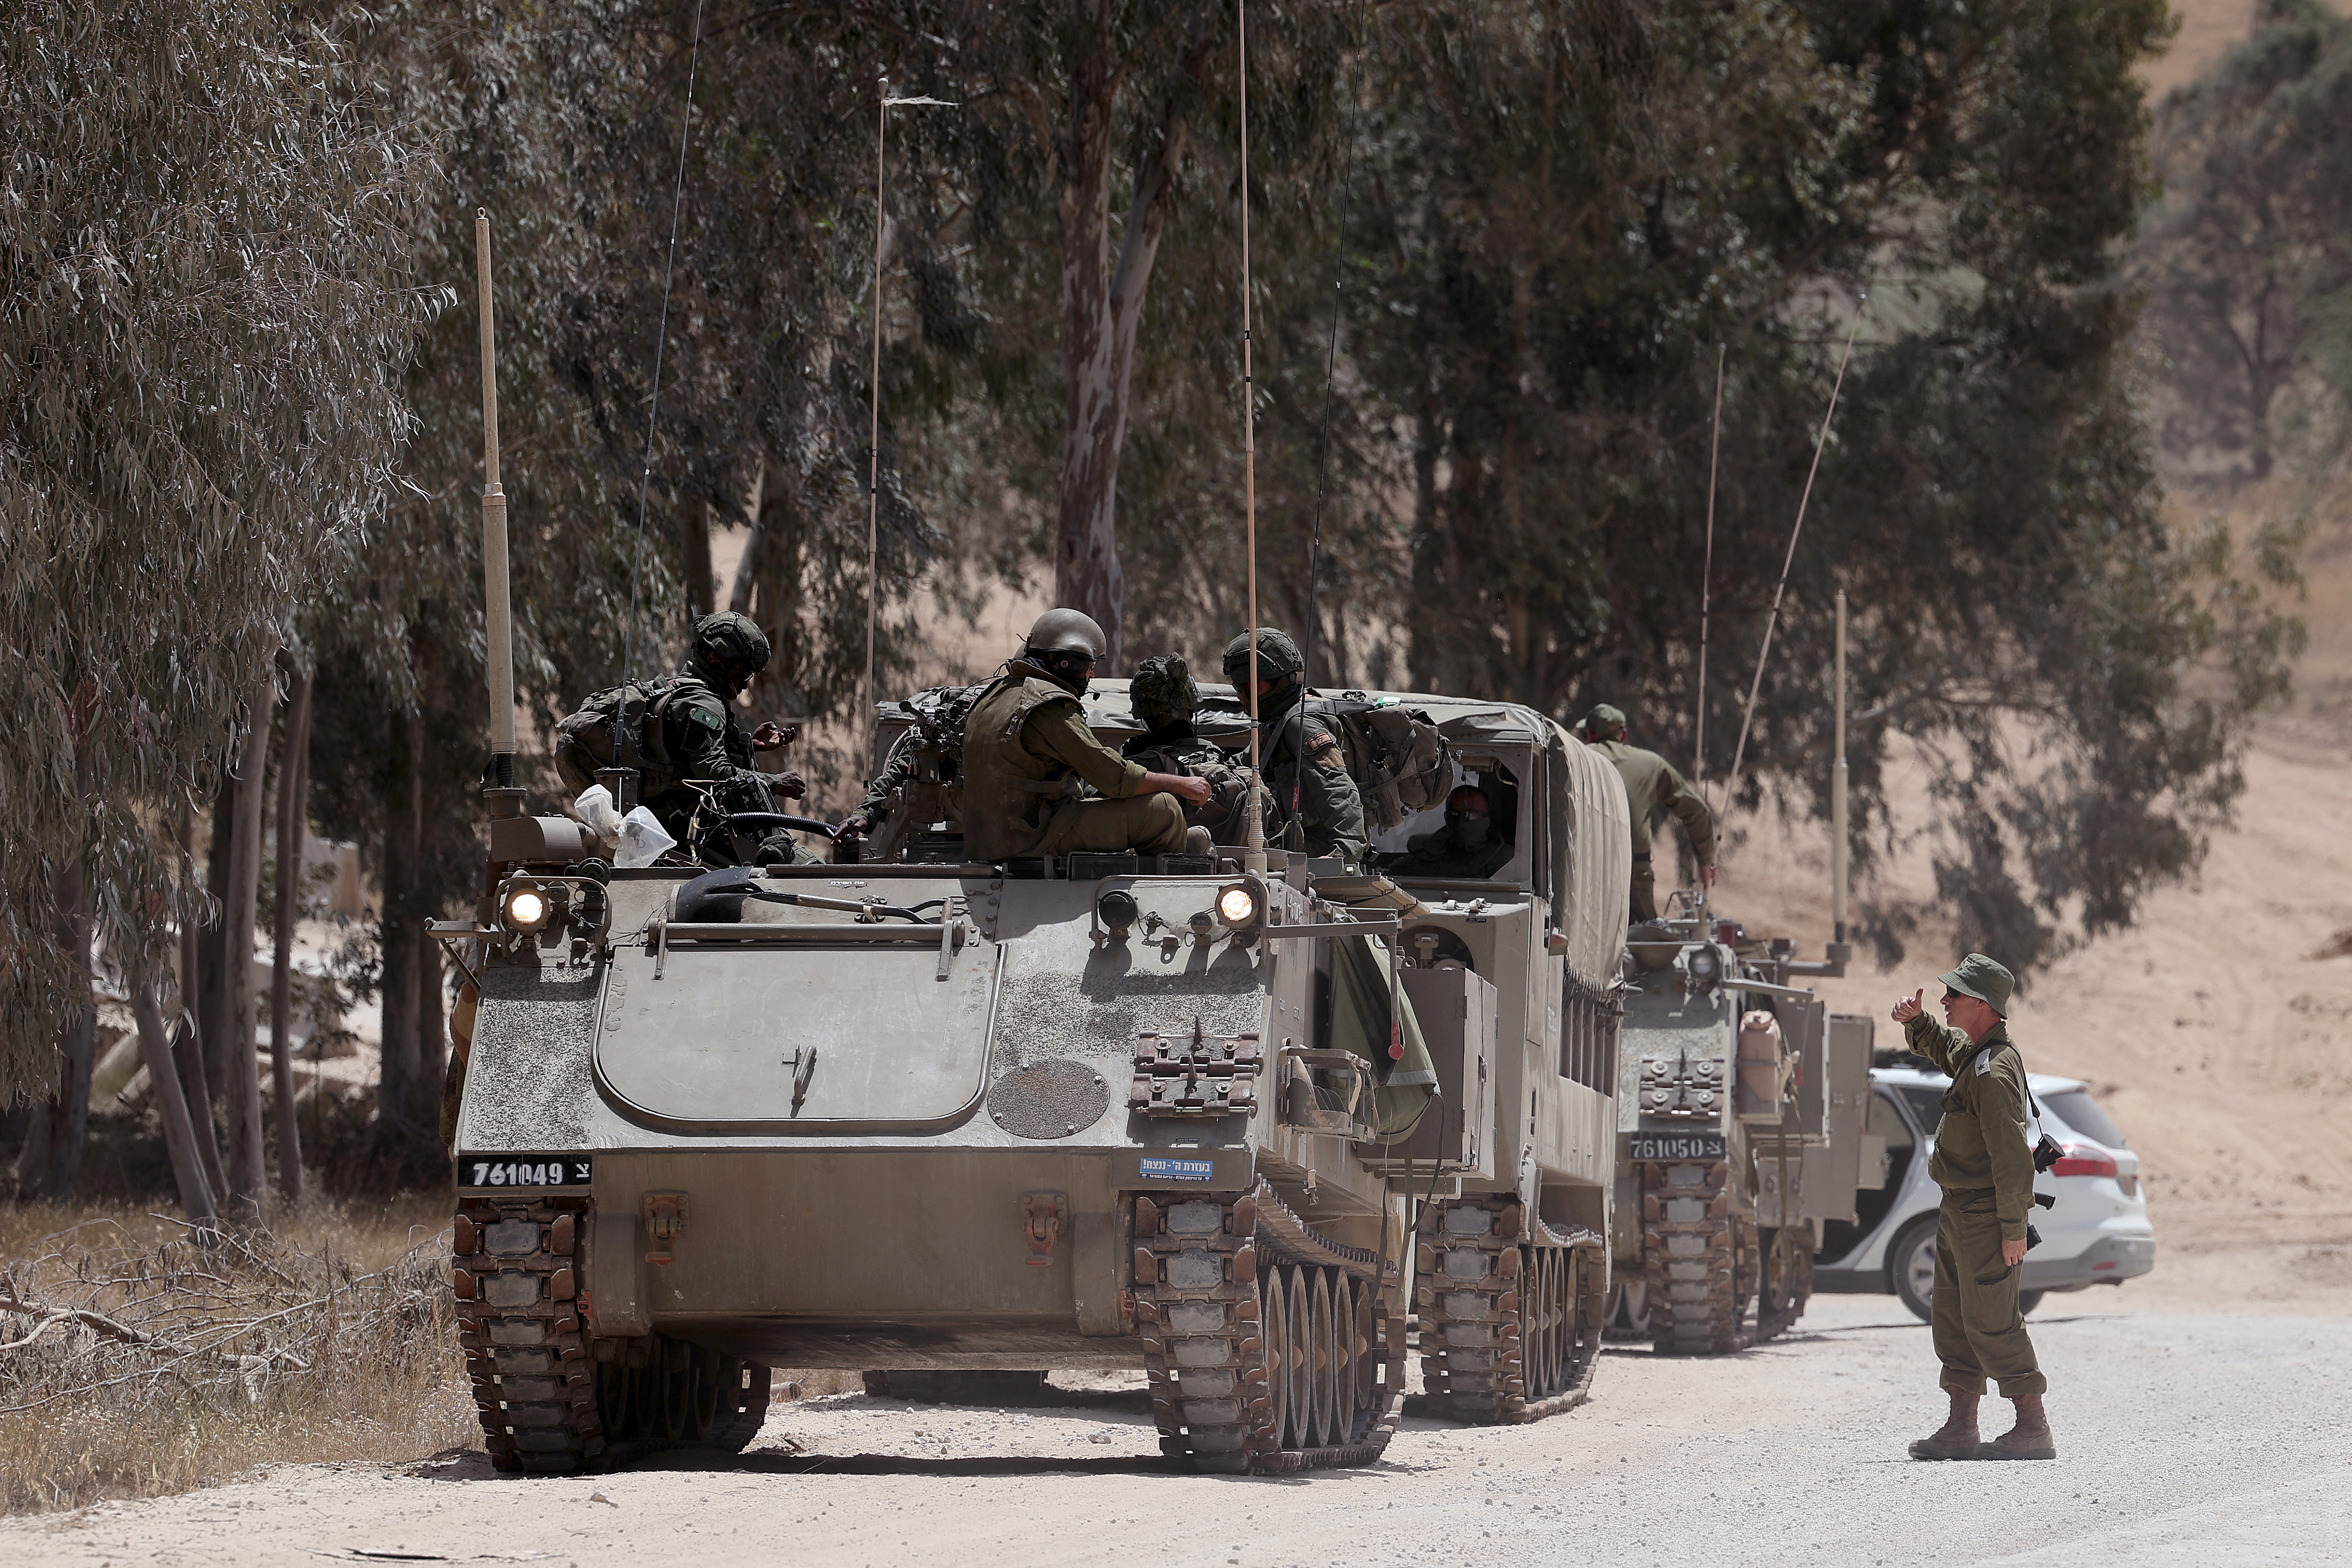 Die israelischen Streitkräfte haben Panzer, Truppen und Fahrzeuge in der Nähe von Rafah stationiert, wo es immer mehr Flüchtlinge aus dem Norden gibt